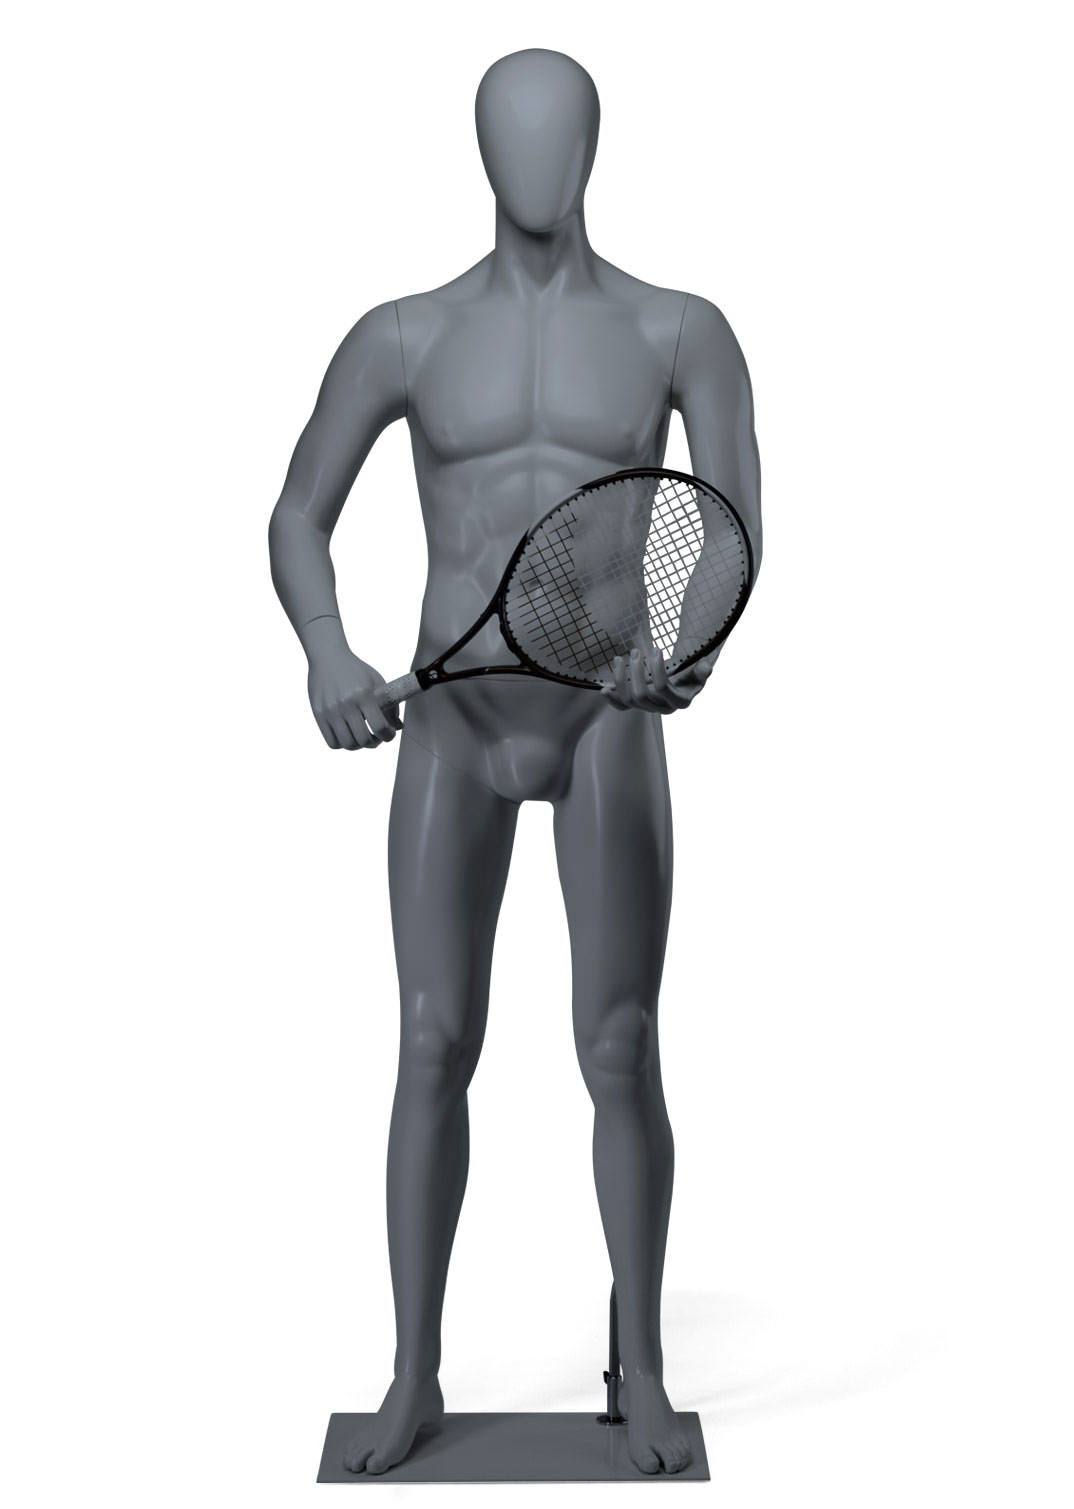 Man tennis / padel